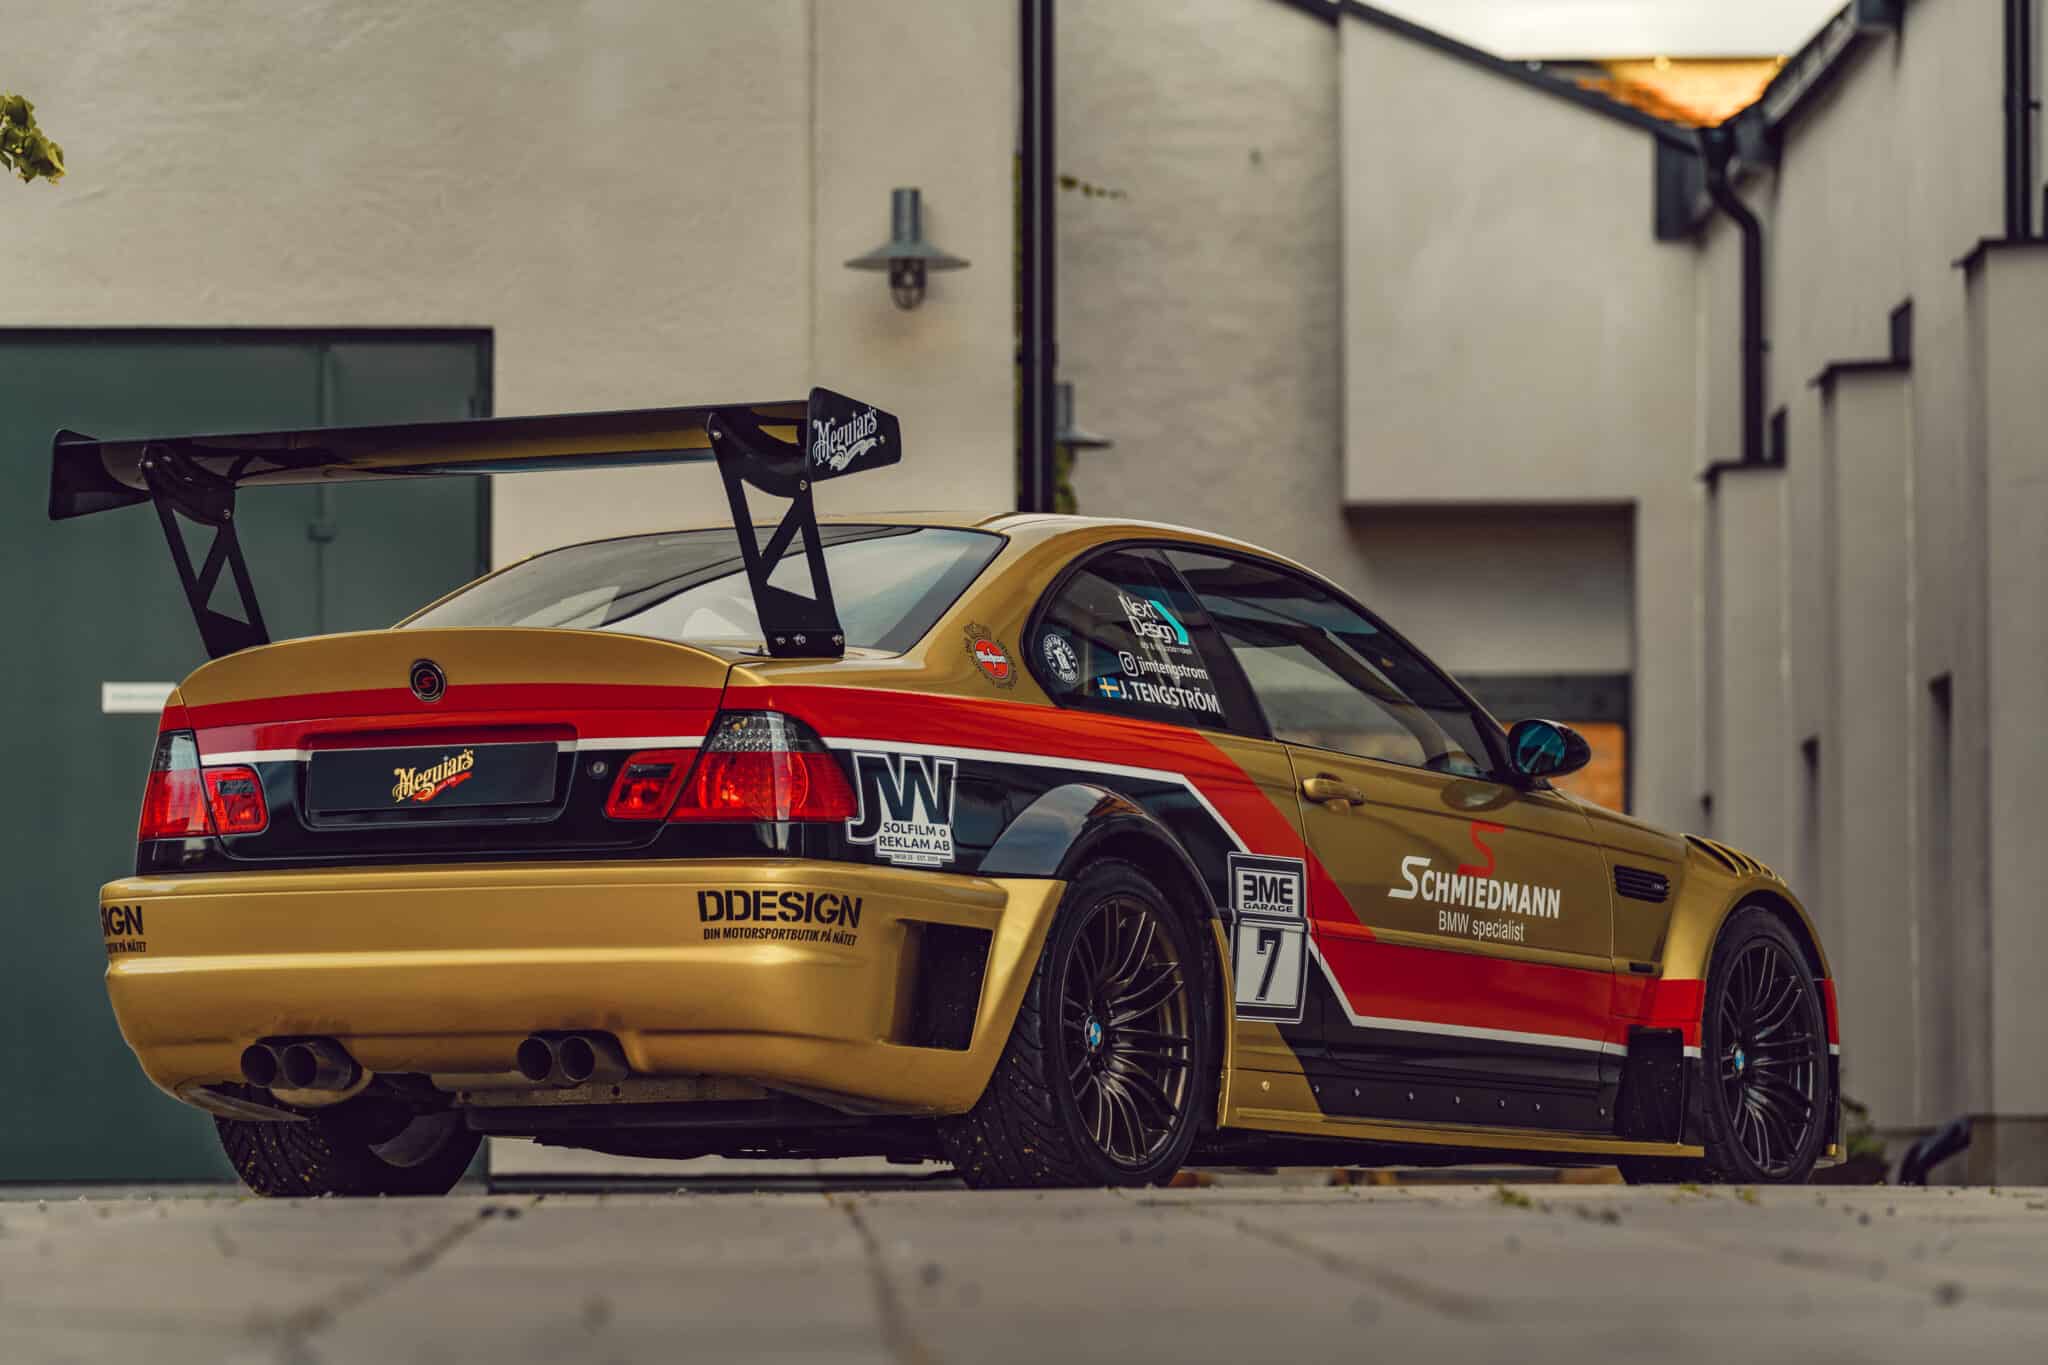 Sportbil guldfärgad med meguiars regskylt